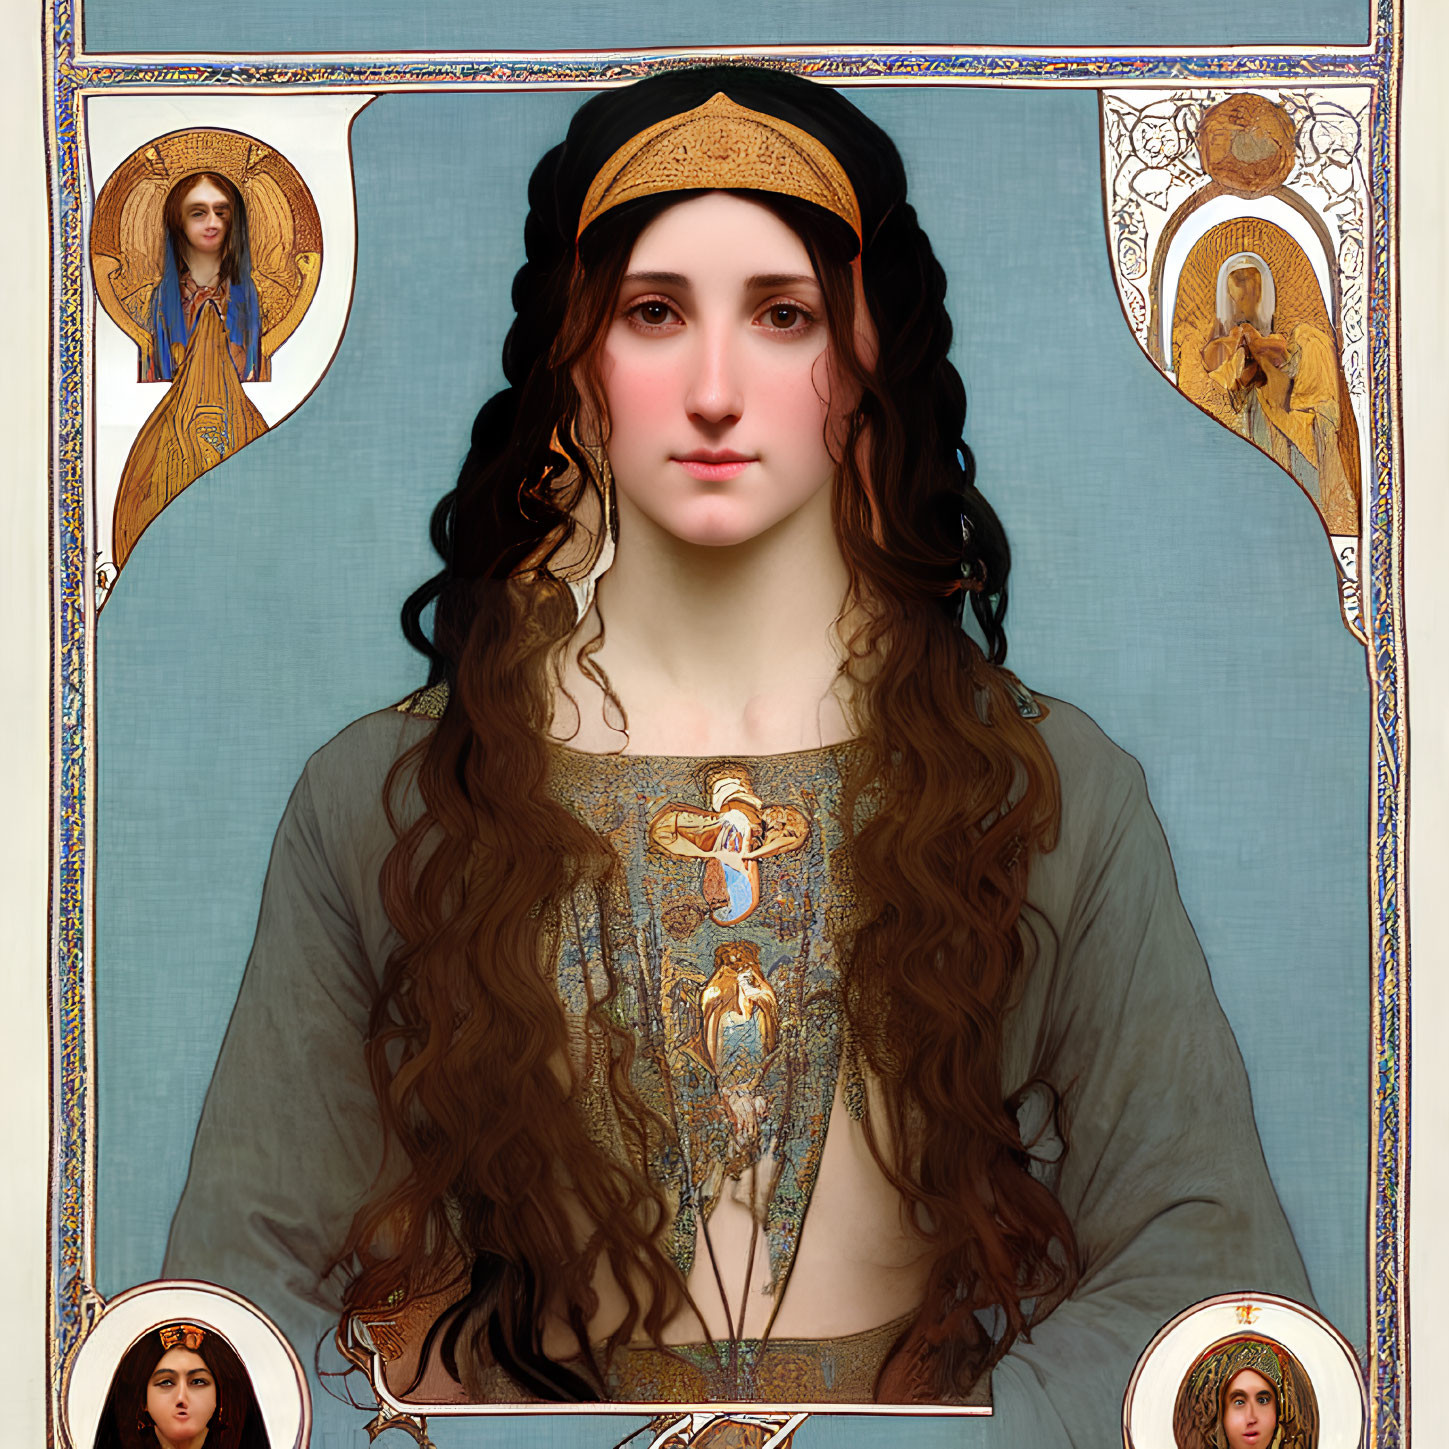 Woman's portrait with long, wavy hair and Art Nouveau motifs.